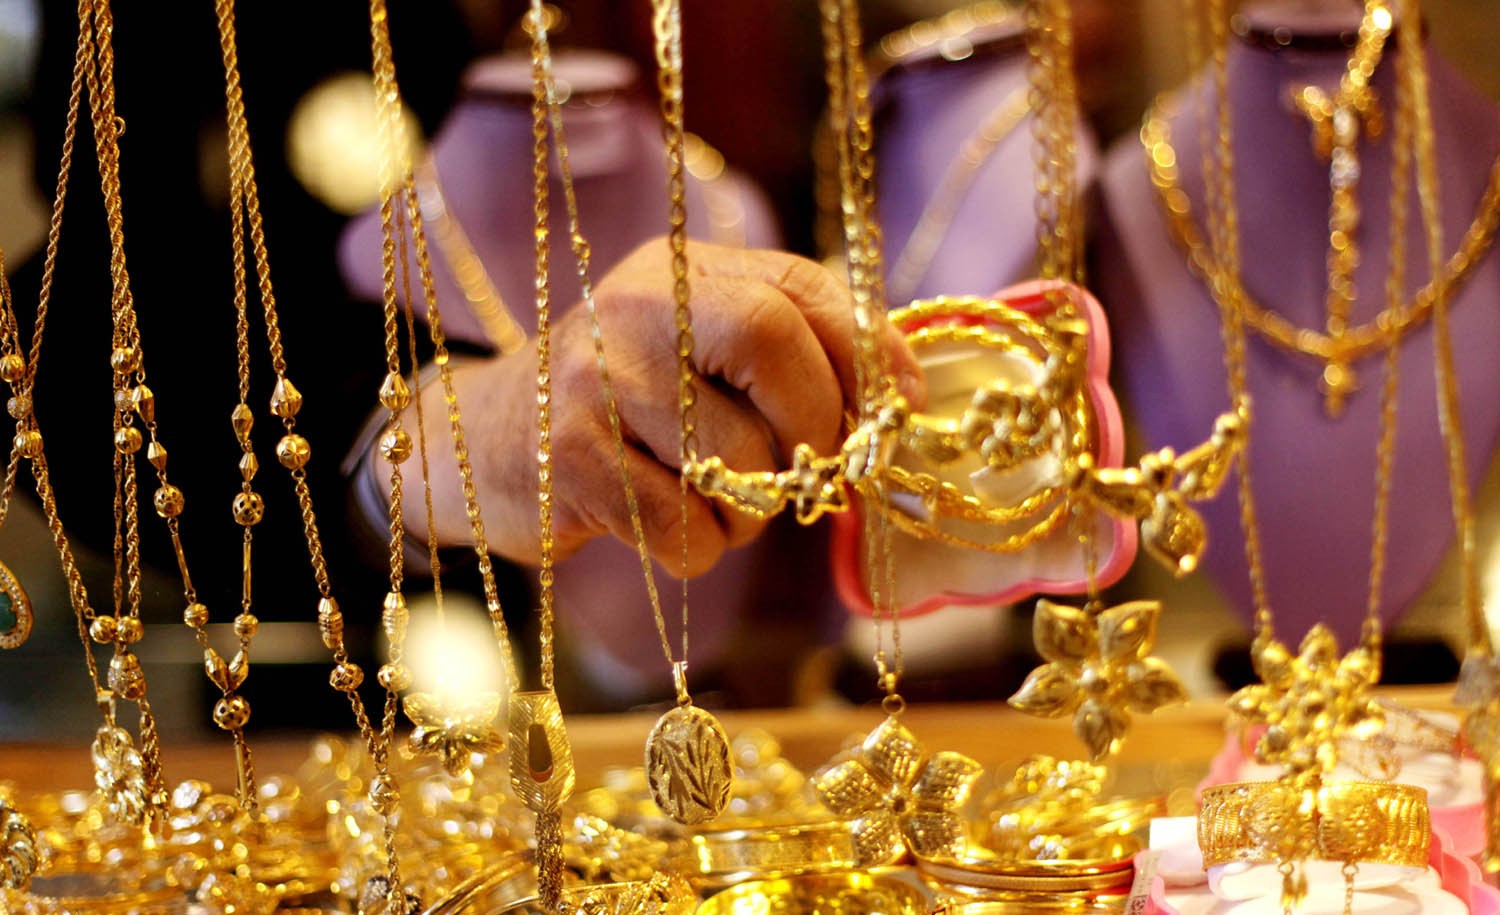 أسعار الذهب في مصر والسعودية والكويت اليوم قارن بين الأسعار واعرف الفرق كام